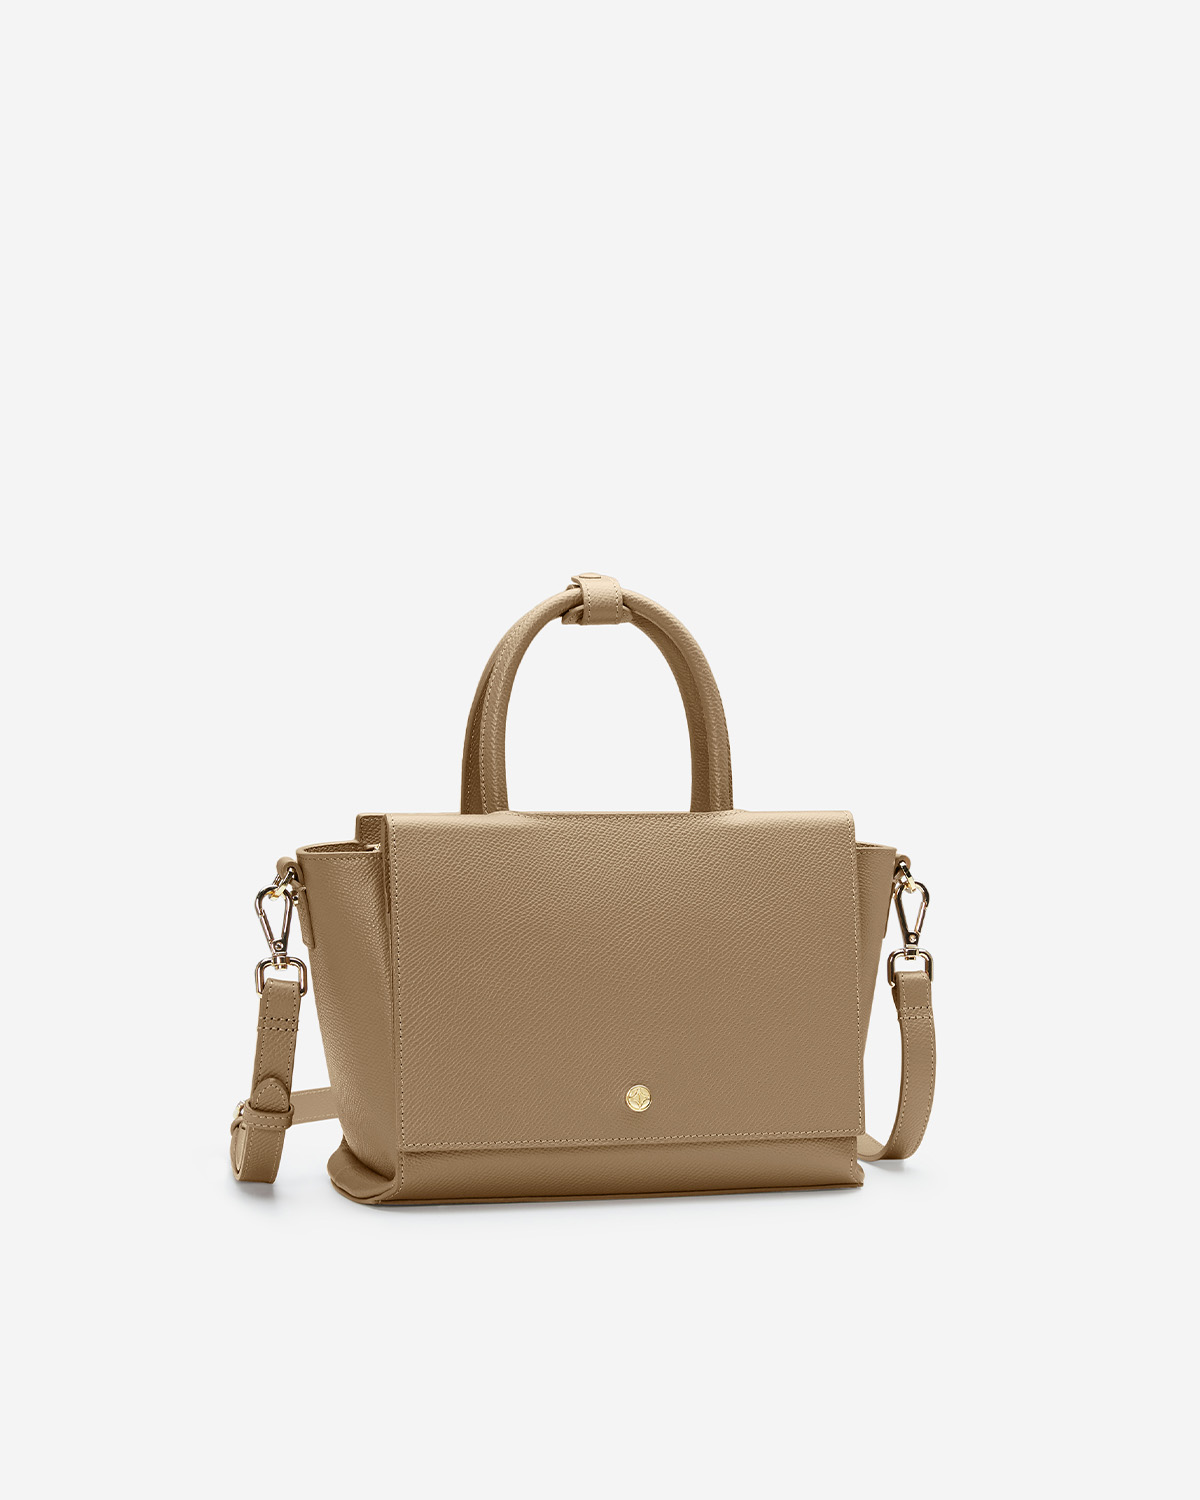 กระเป๋าถือหนังแท้ VERA Heidi Leather Handbag, ไซส์ 28 สี Martini Olive